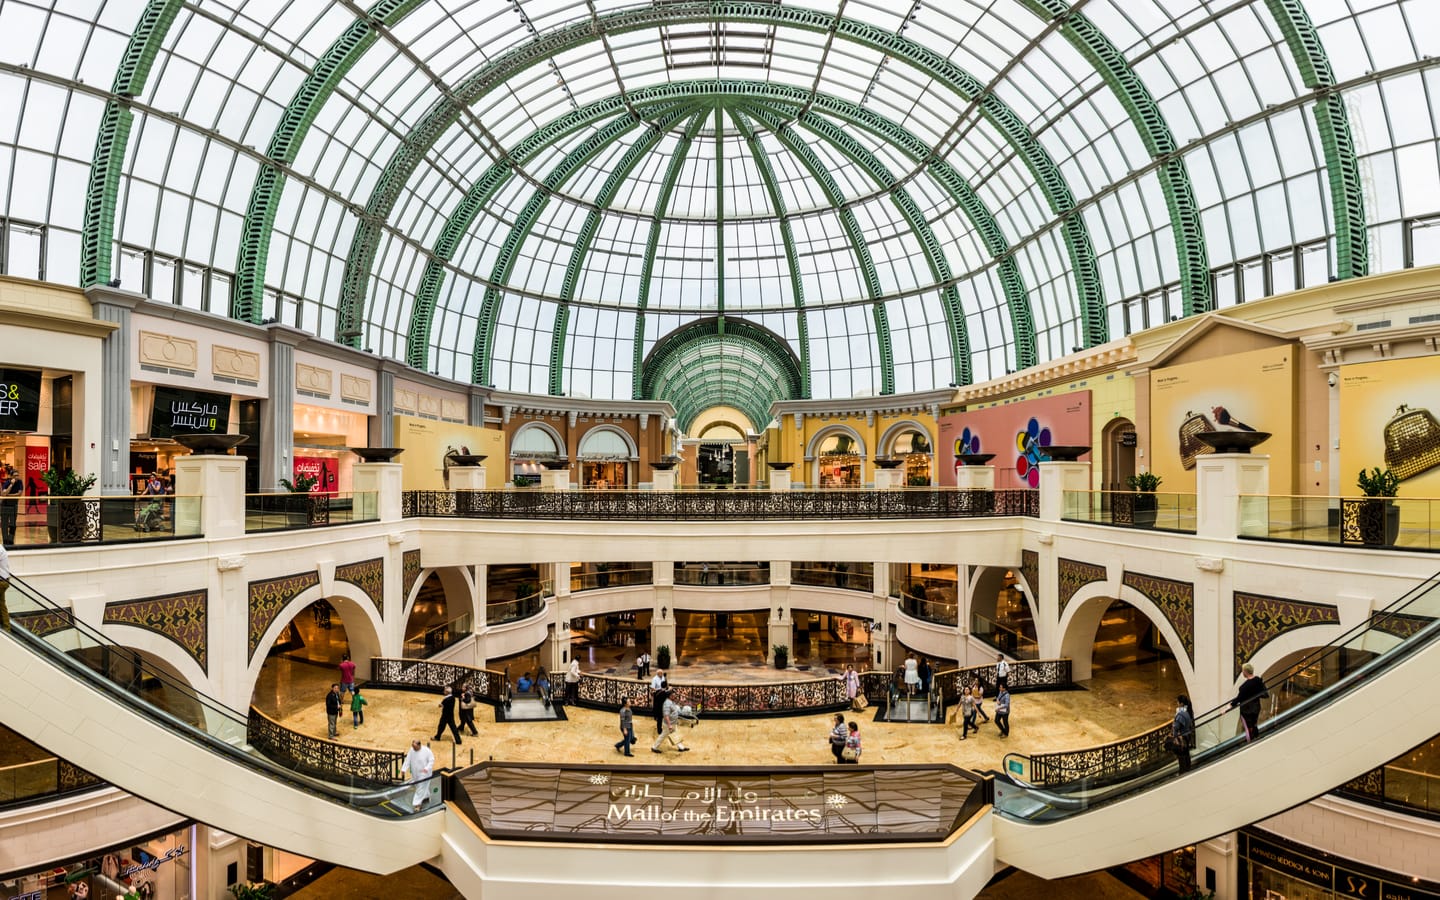 Top 10 Shopping Malls In Dubai: Dubai Mall, Mall of the Emirates & More